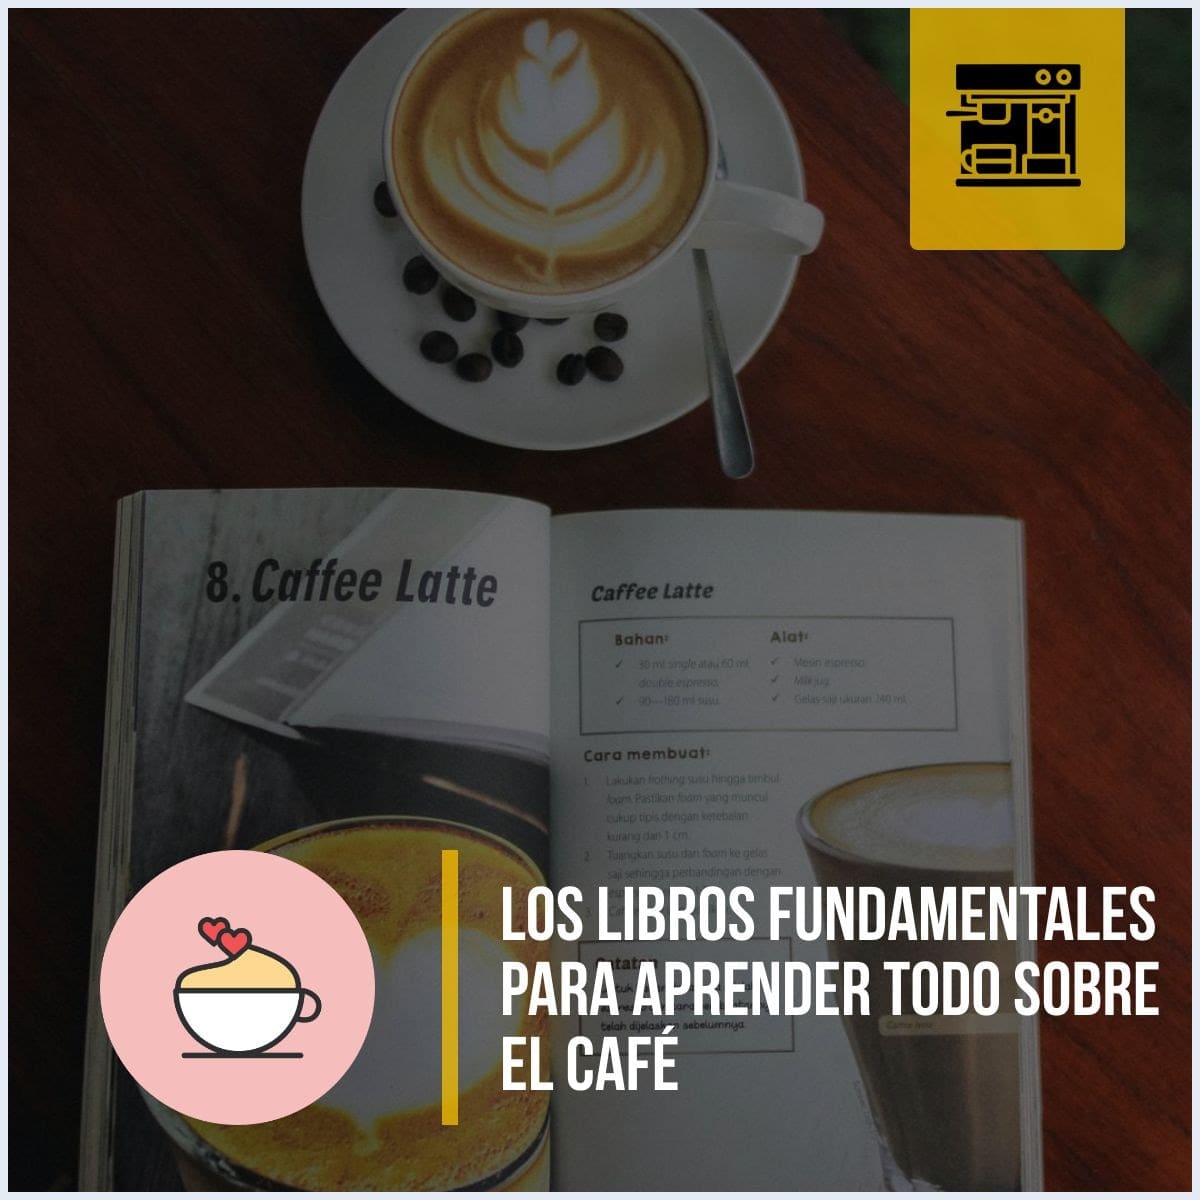 Los 3 libros fundamentales para aprender todo sobre el café